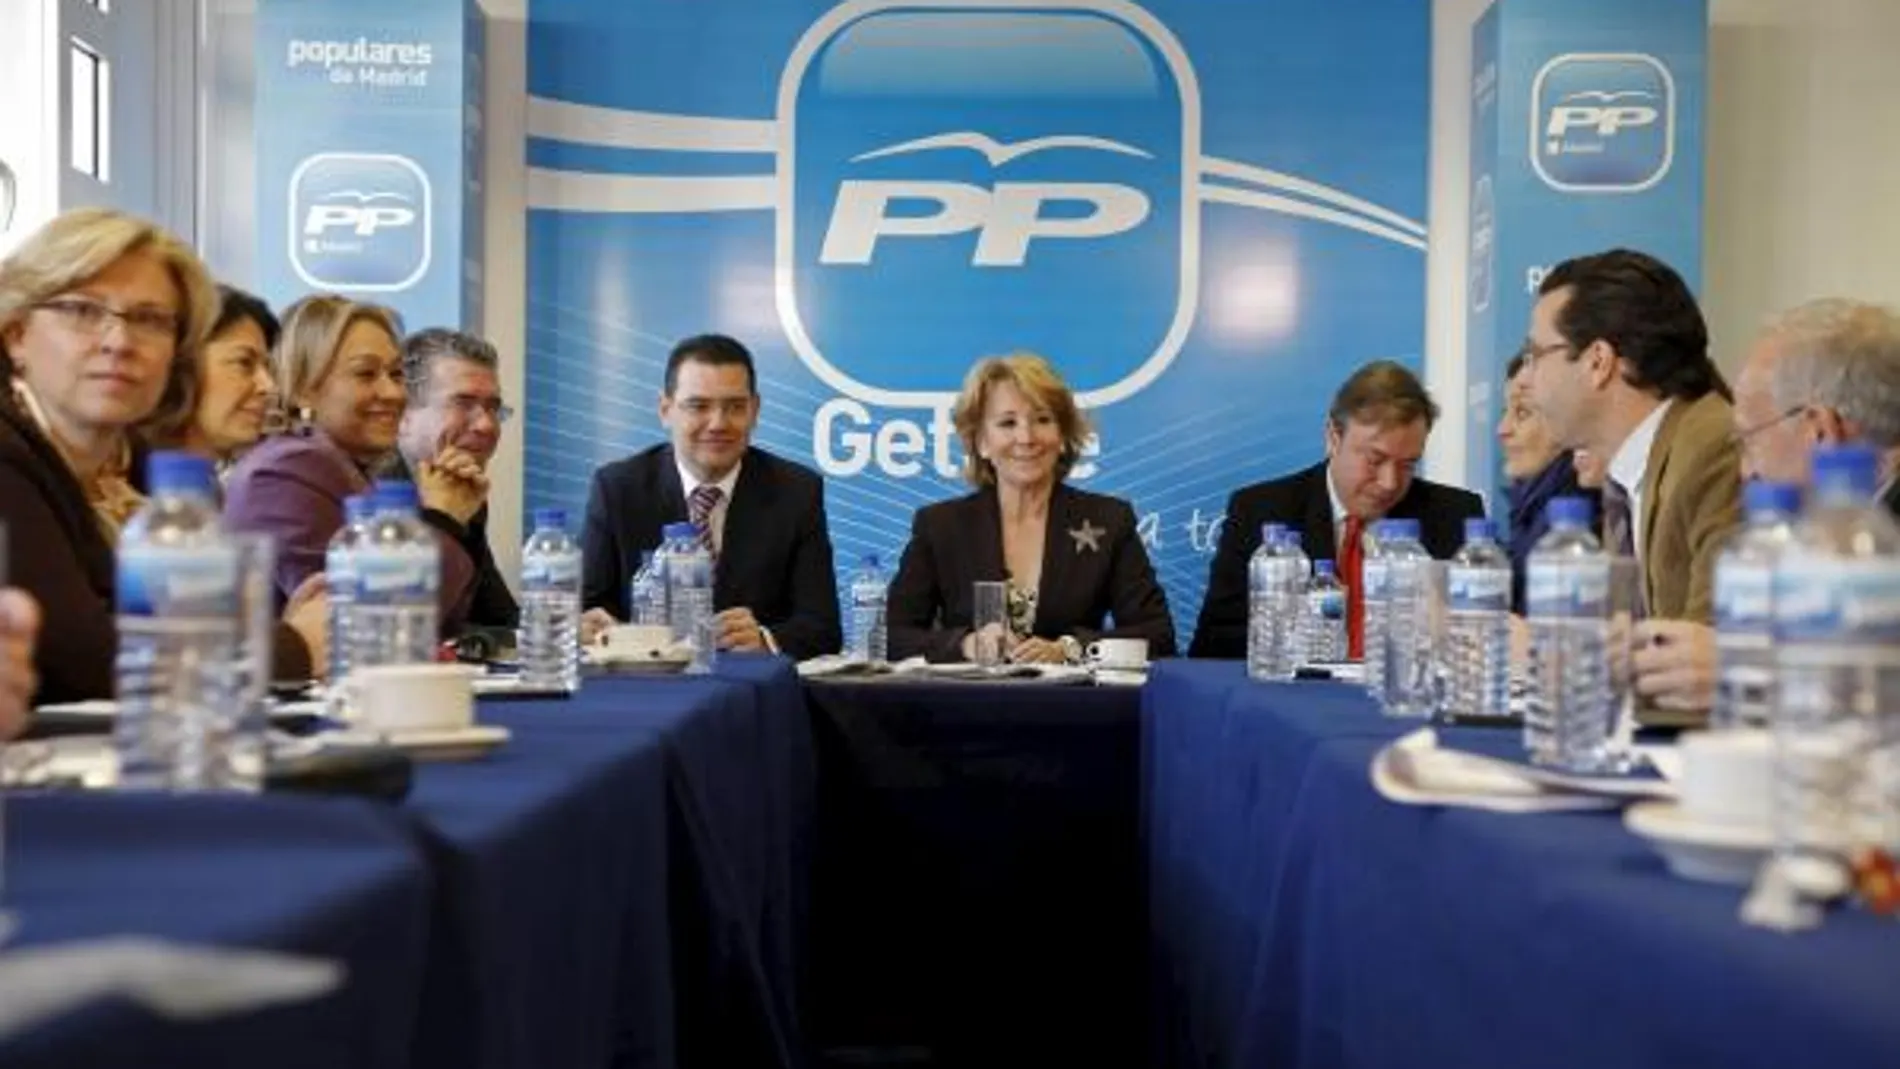 Rajoy irá a la presentación de candidatos del PP de Madrid el 10 de abril